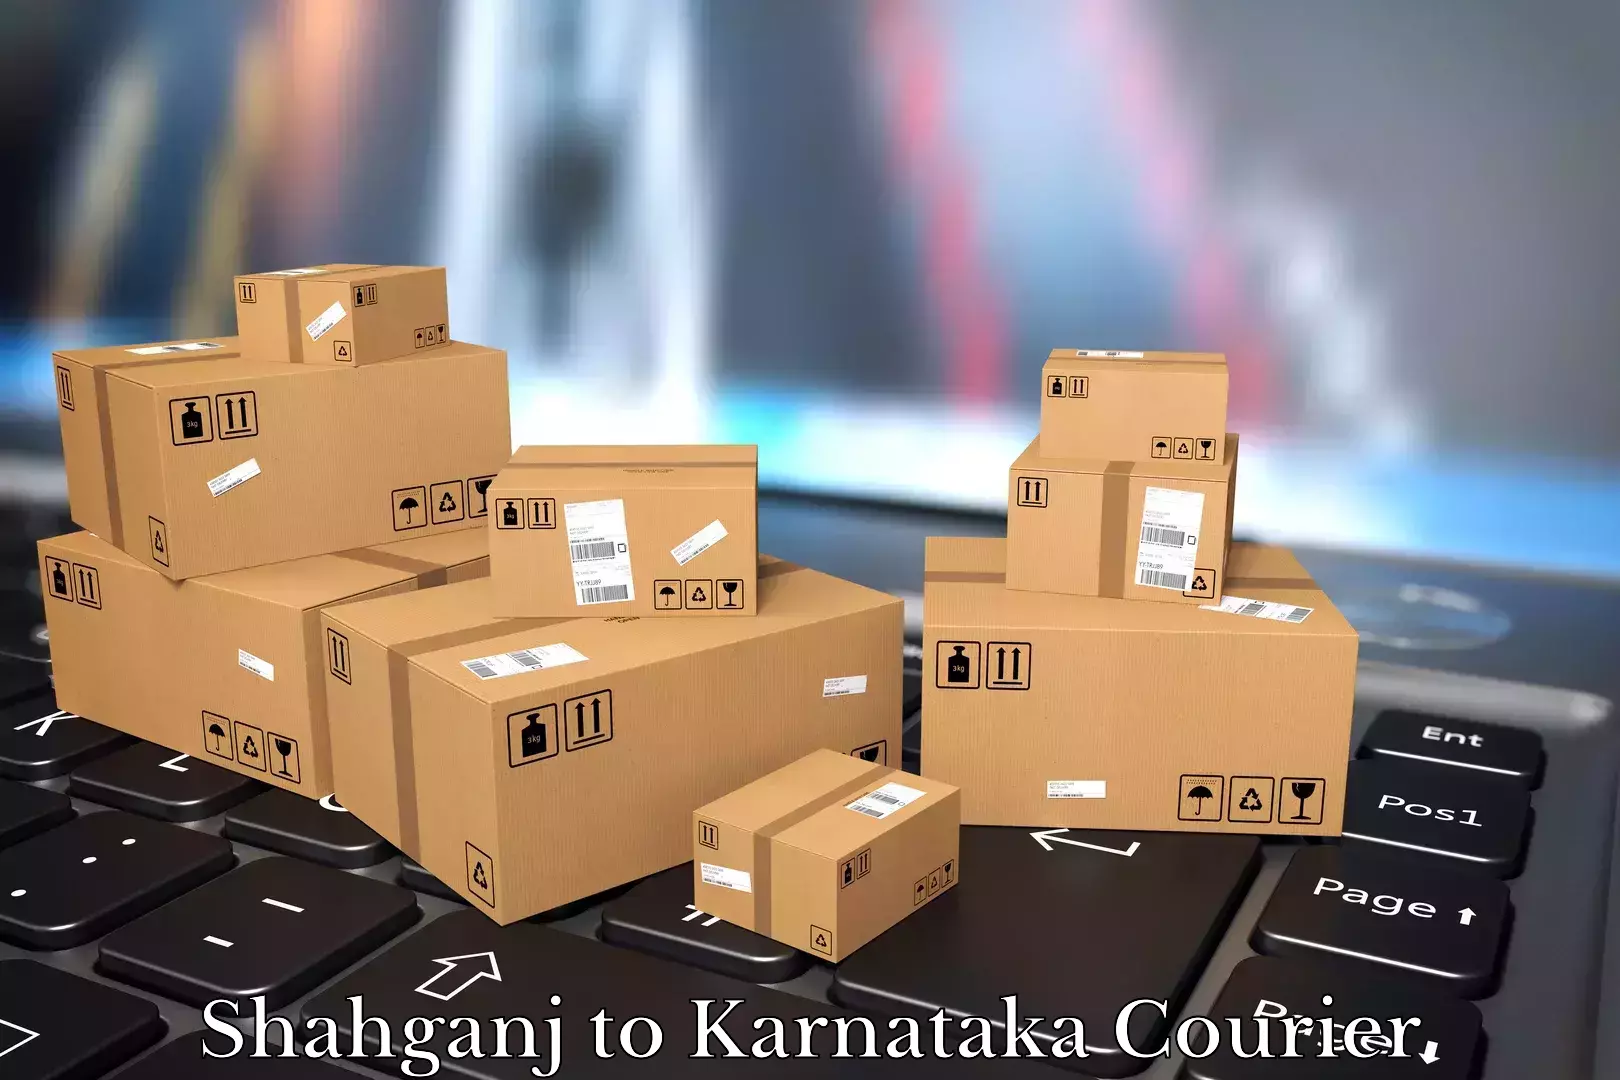 Home goods moving company Shahganj to Yenepoya Mangalore